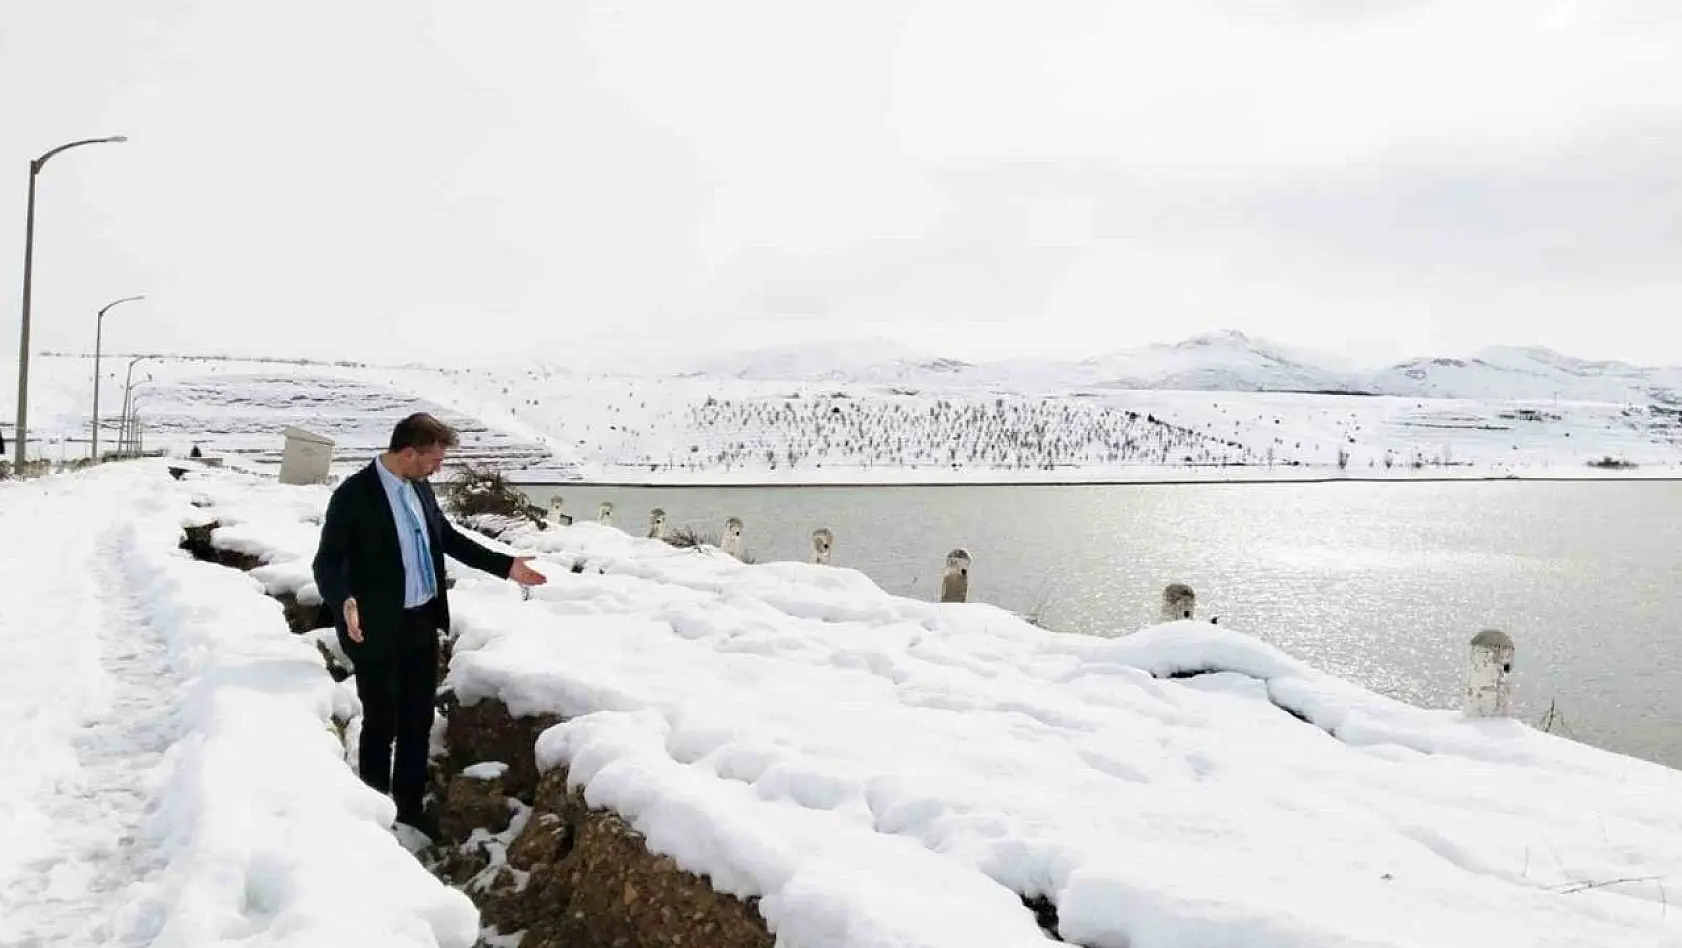 Malatya Sultansuyu Barajı suyu tahliye ediliyor